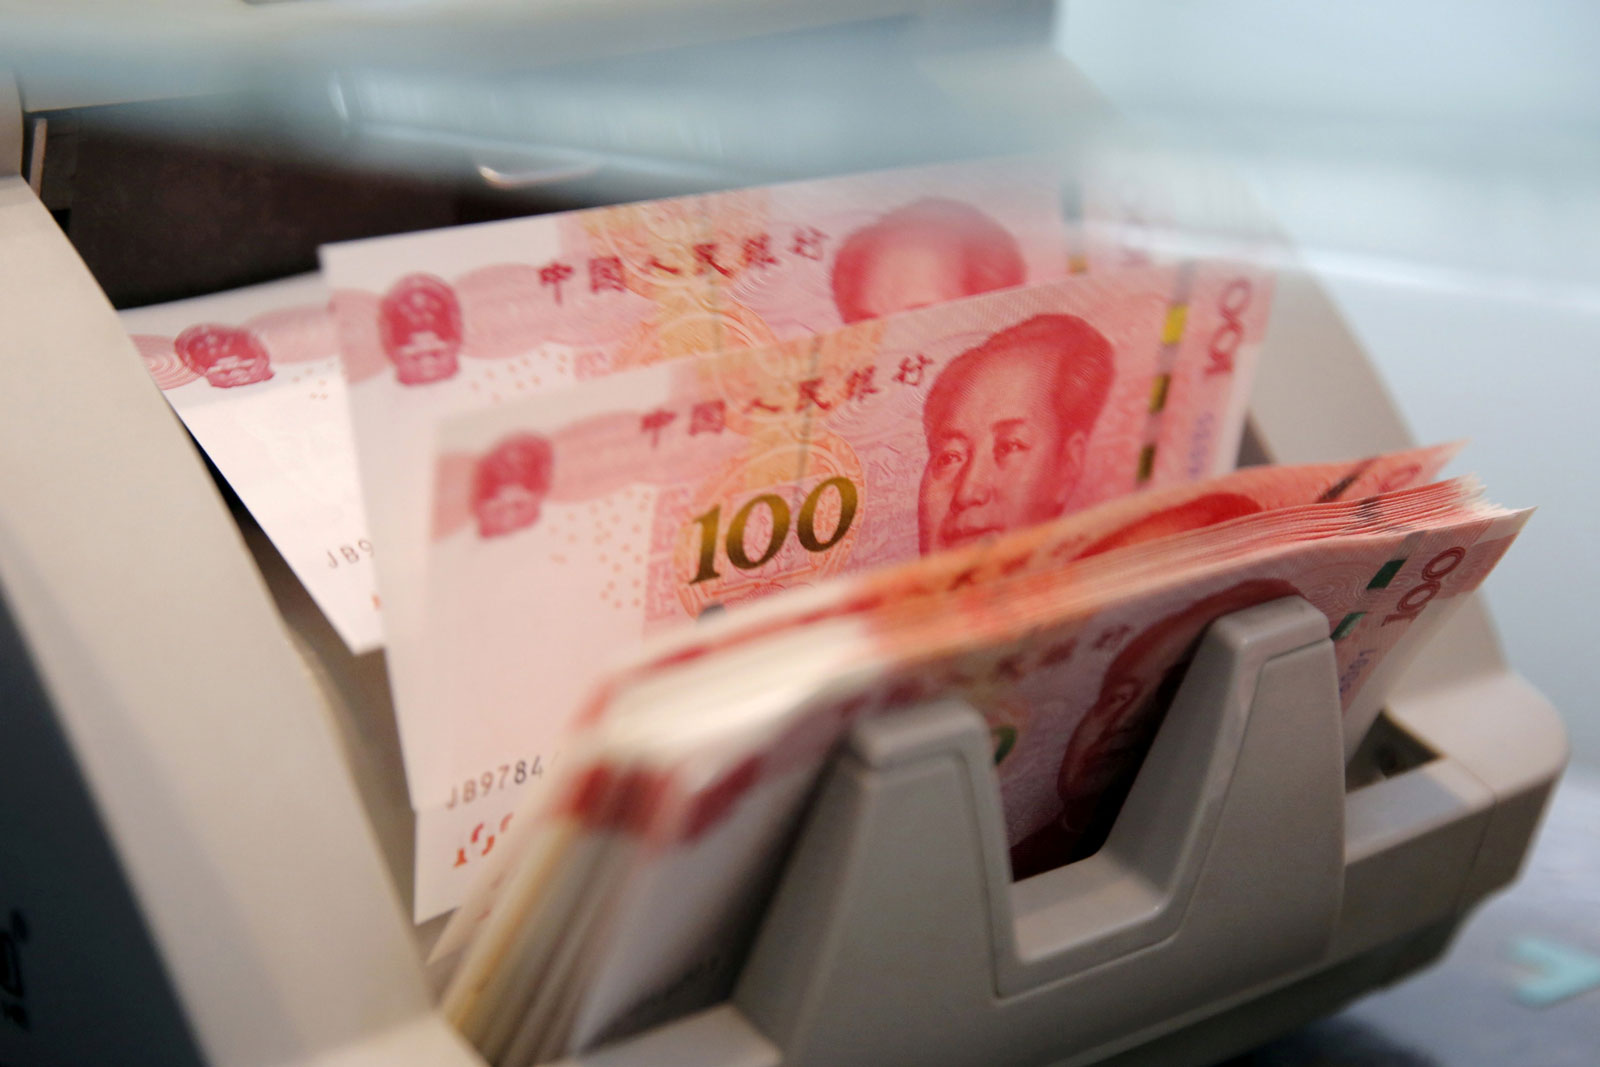 البنك المركزي الصيني يضخ 61 مليار يوان في النظام المصرفي